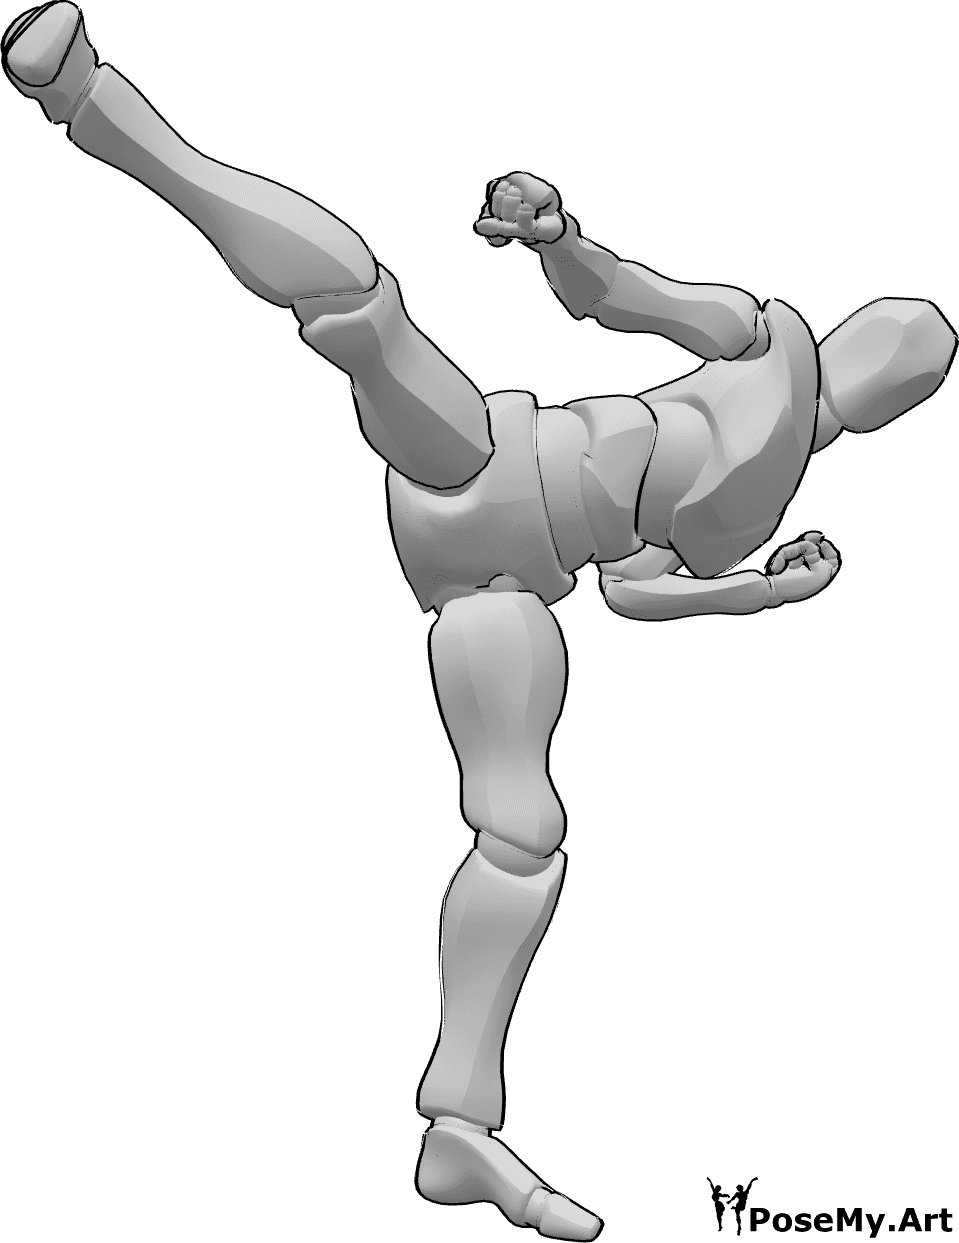 Referencia de poses- Postura de patada de taekwondo masculino - Taekwondo masculino patada frontal con pierna derecha pose